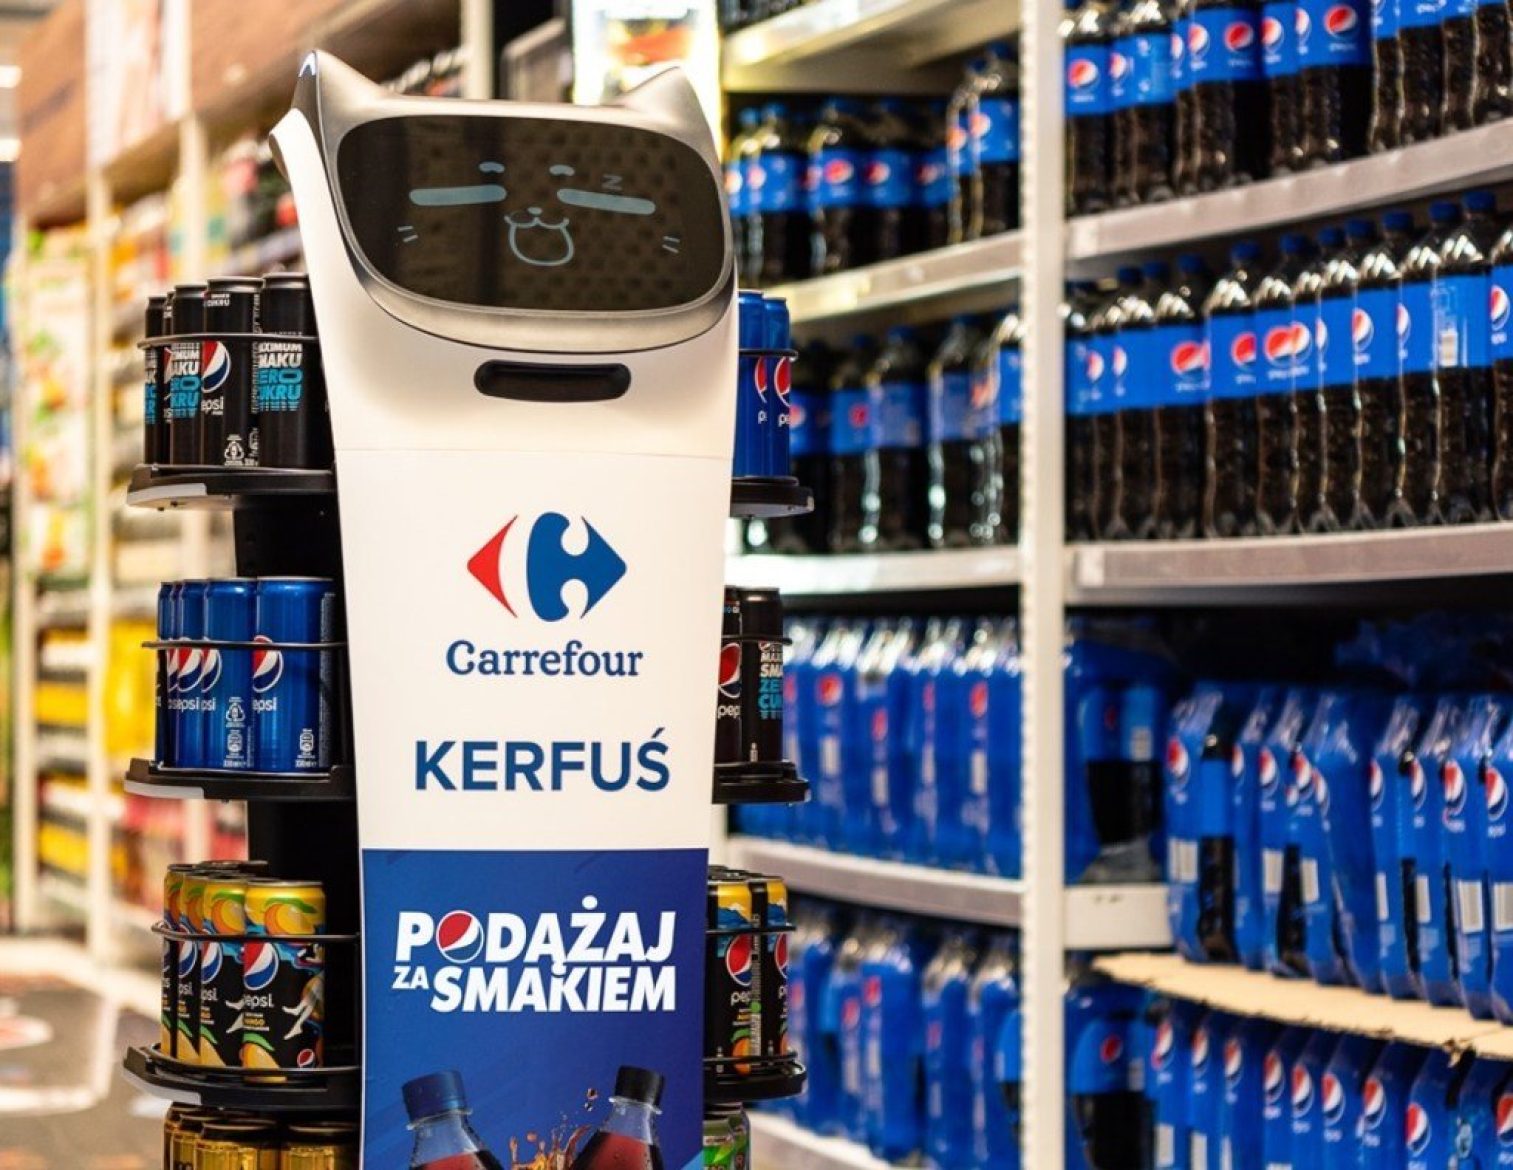 Robot Pepsi Carrefour